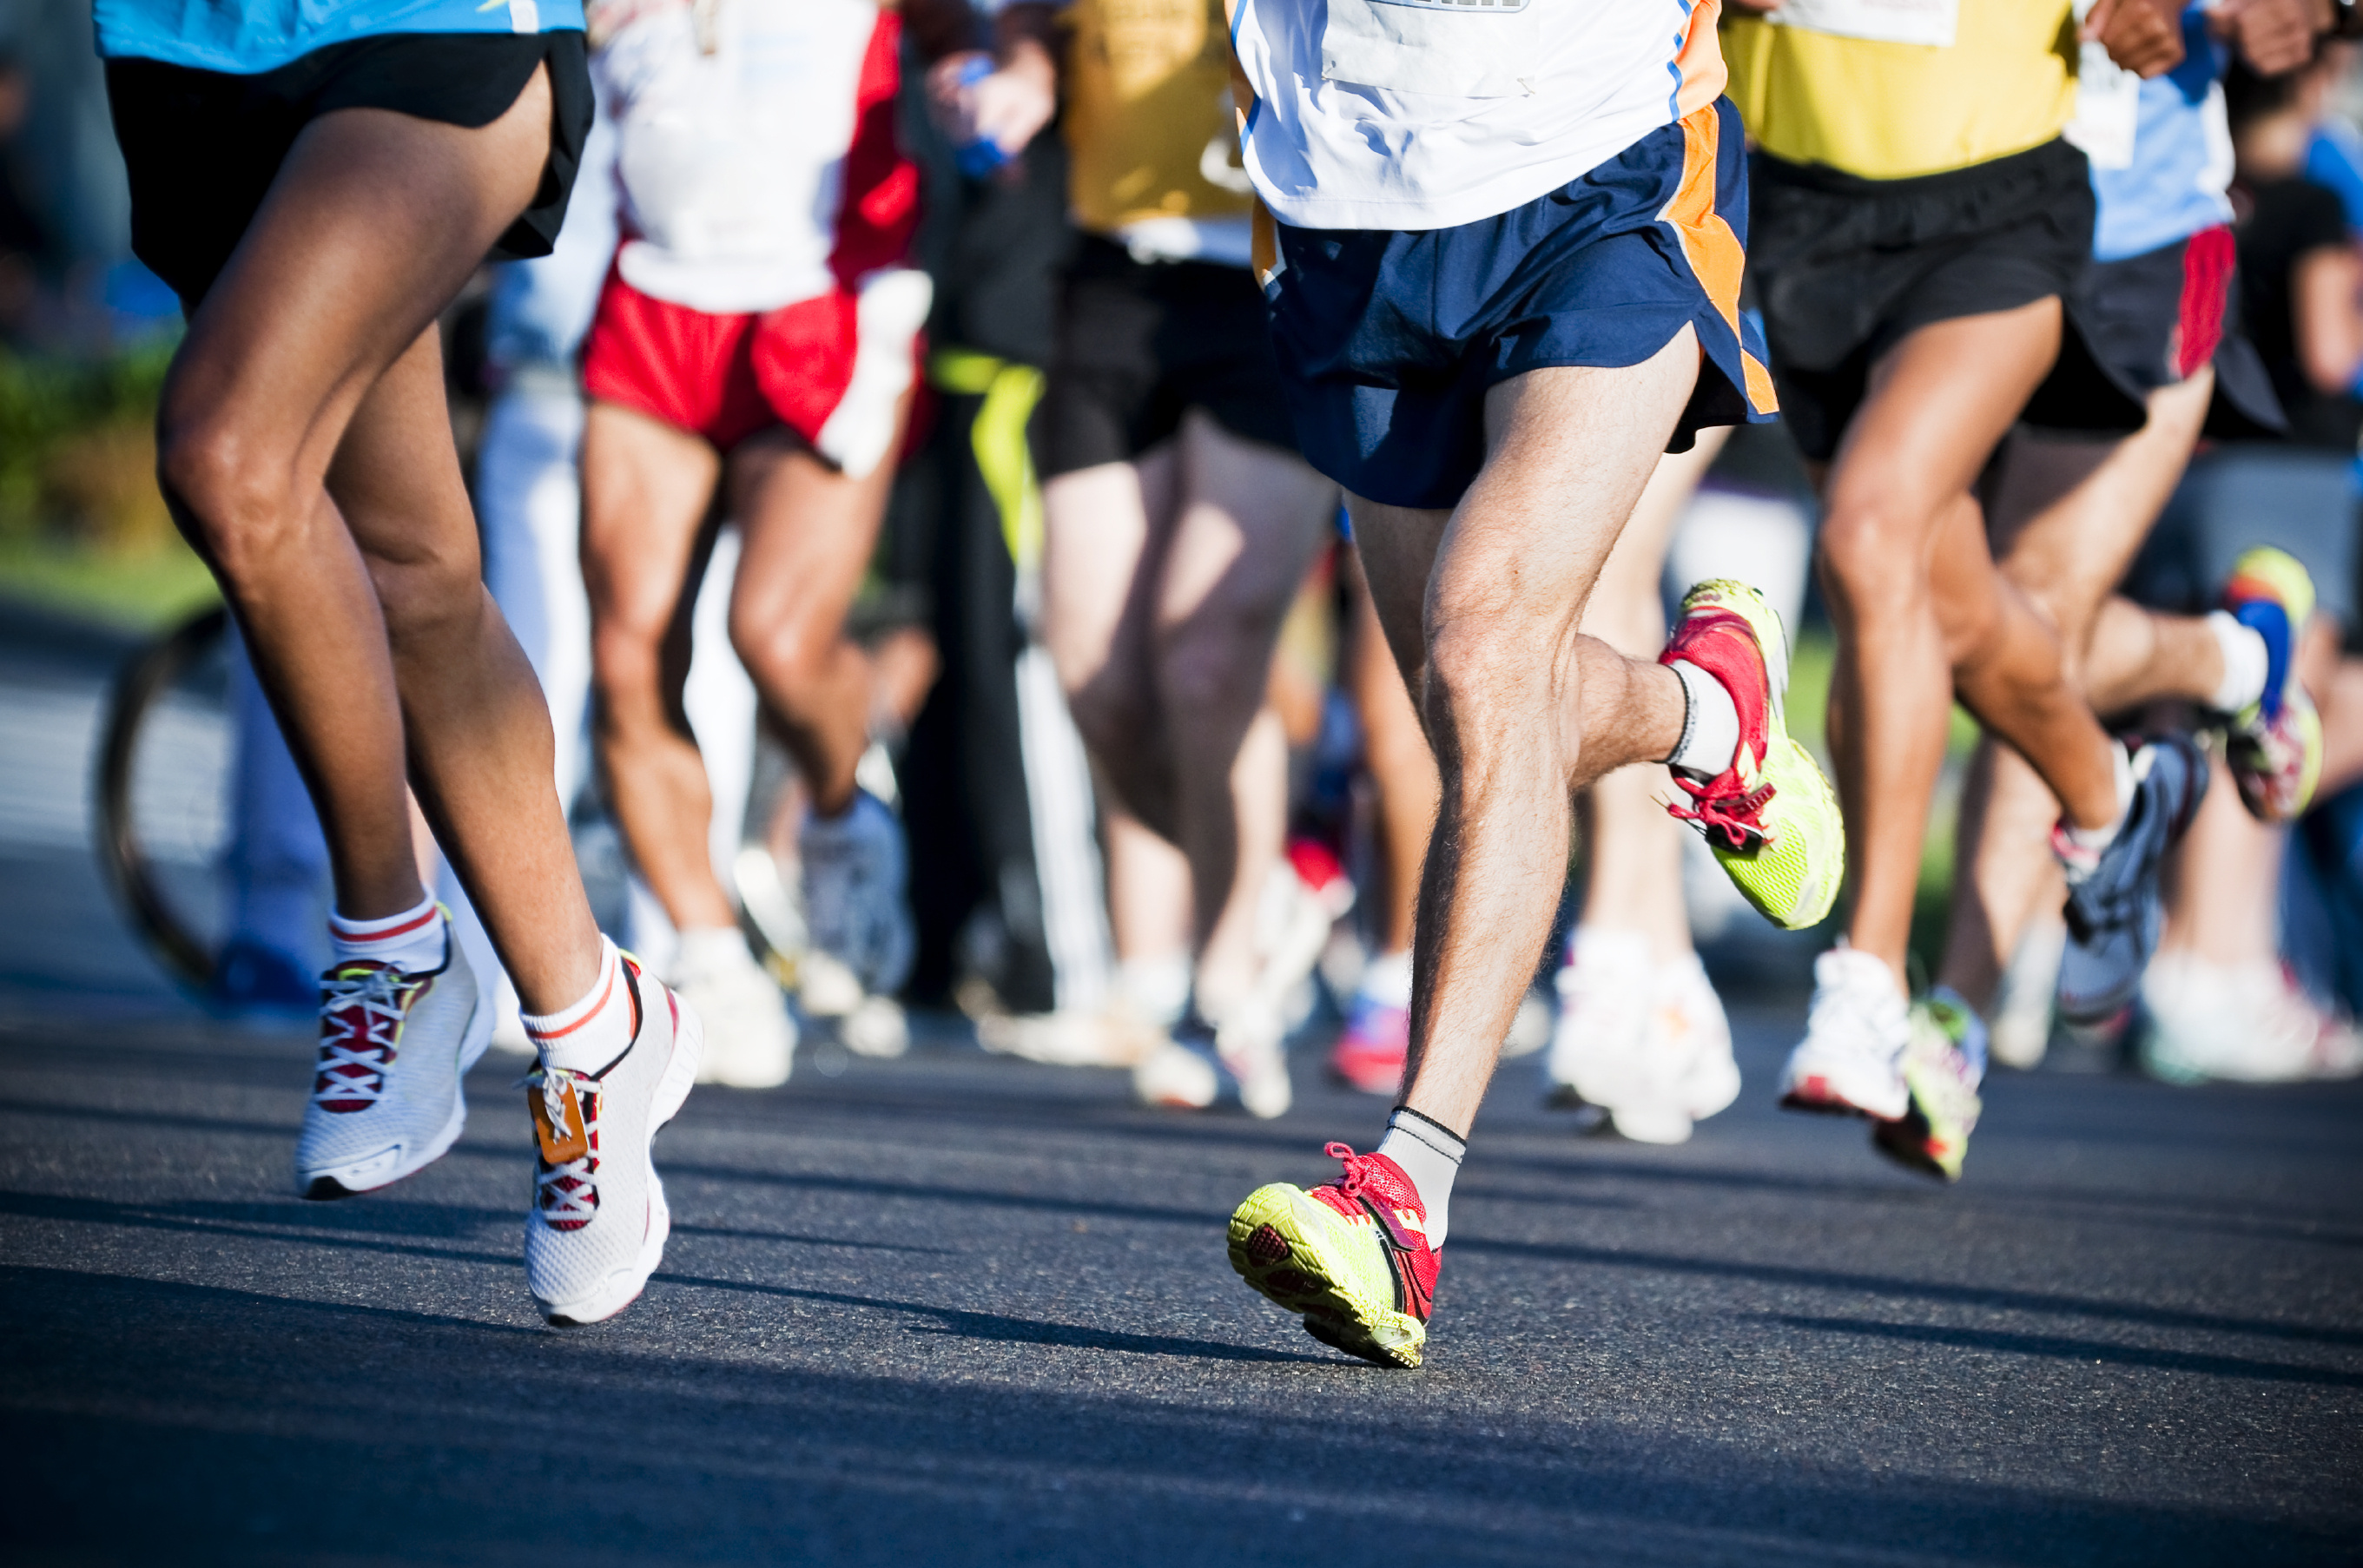 Marathon: The sport of running long-distance races, Endurance runs, A long-distance running tournament. 2730x1810 HD Wallpaper.